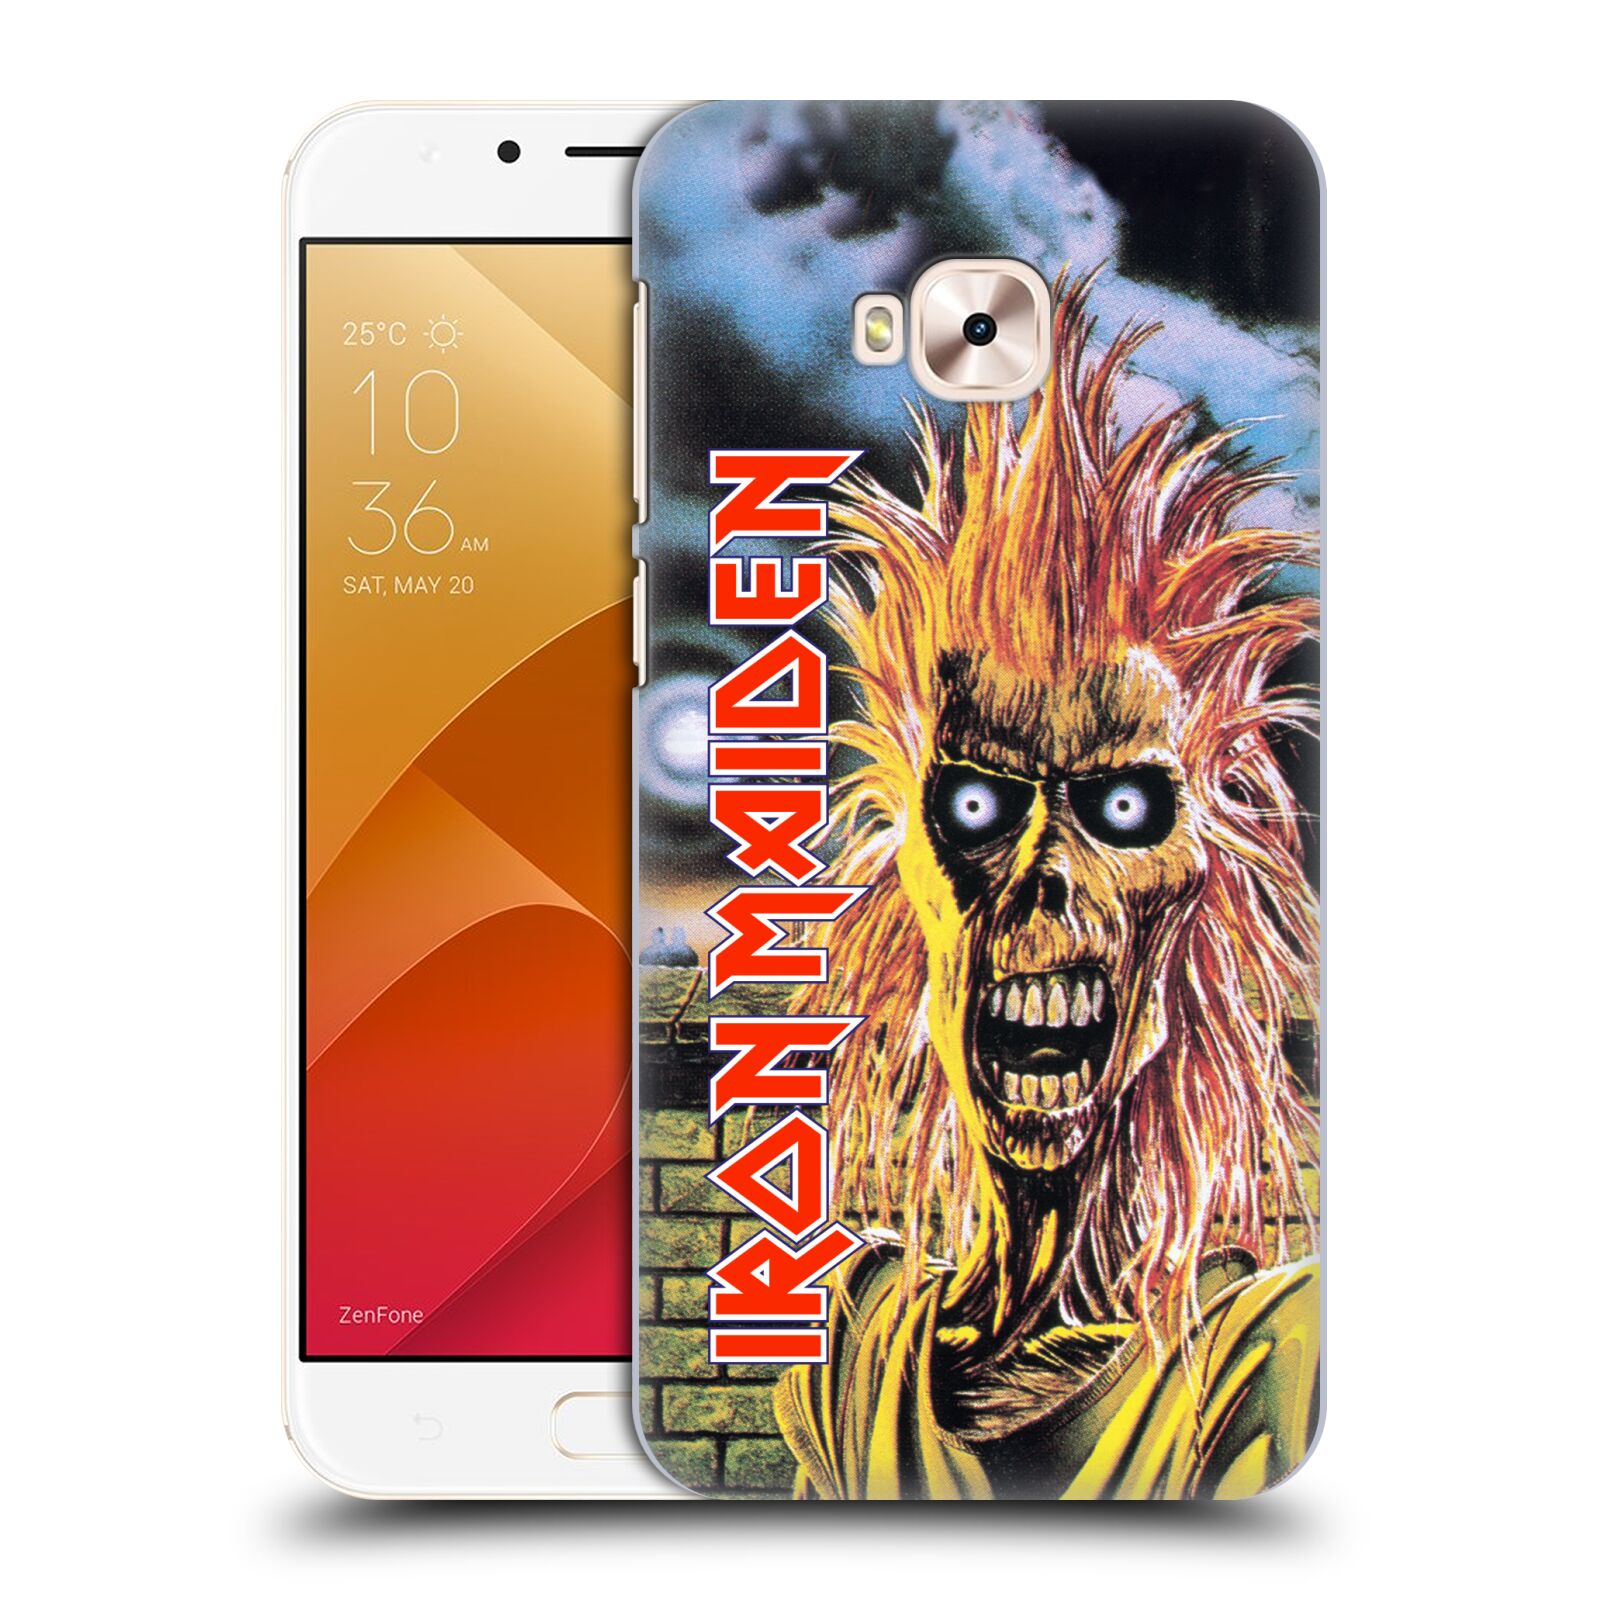 HEAD CASE plastový obal na mobil Asus Zenfone 4 Selfie Pro ZD552KL Heavymetalová skupina Iron Maiden punker